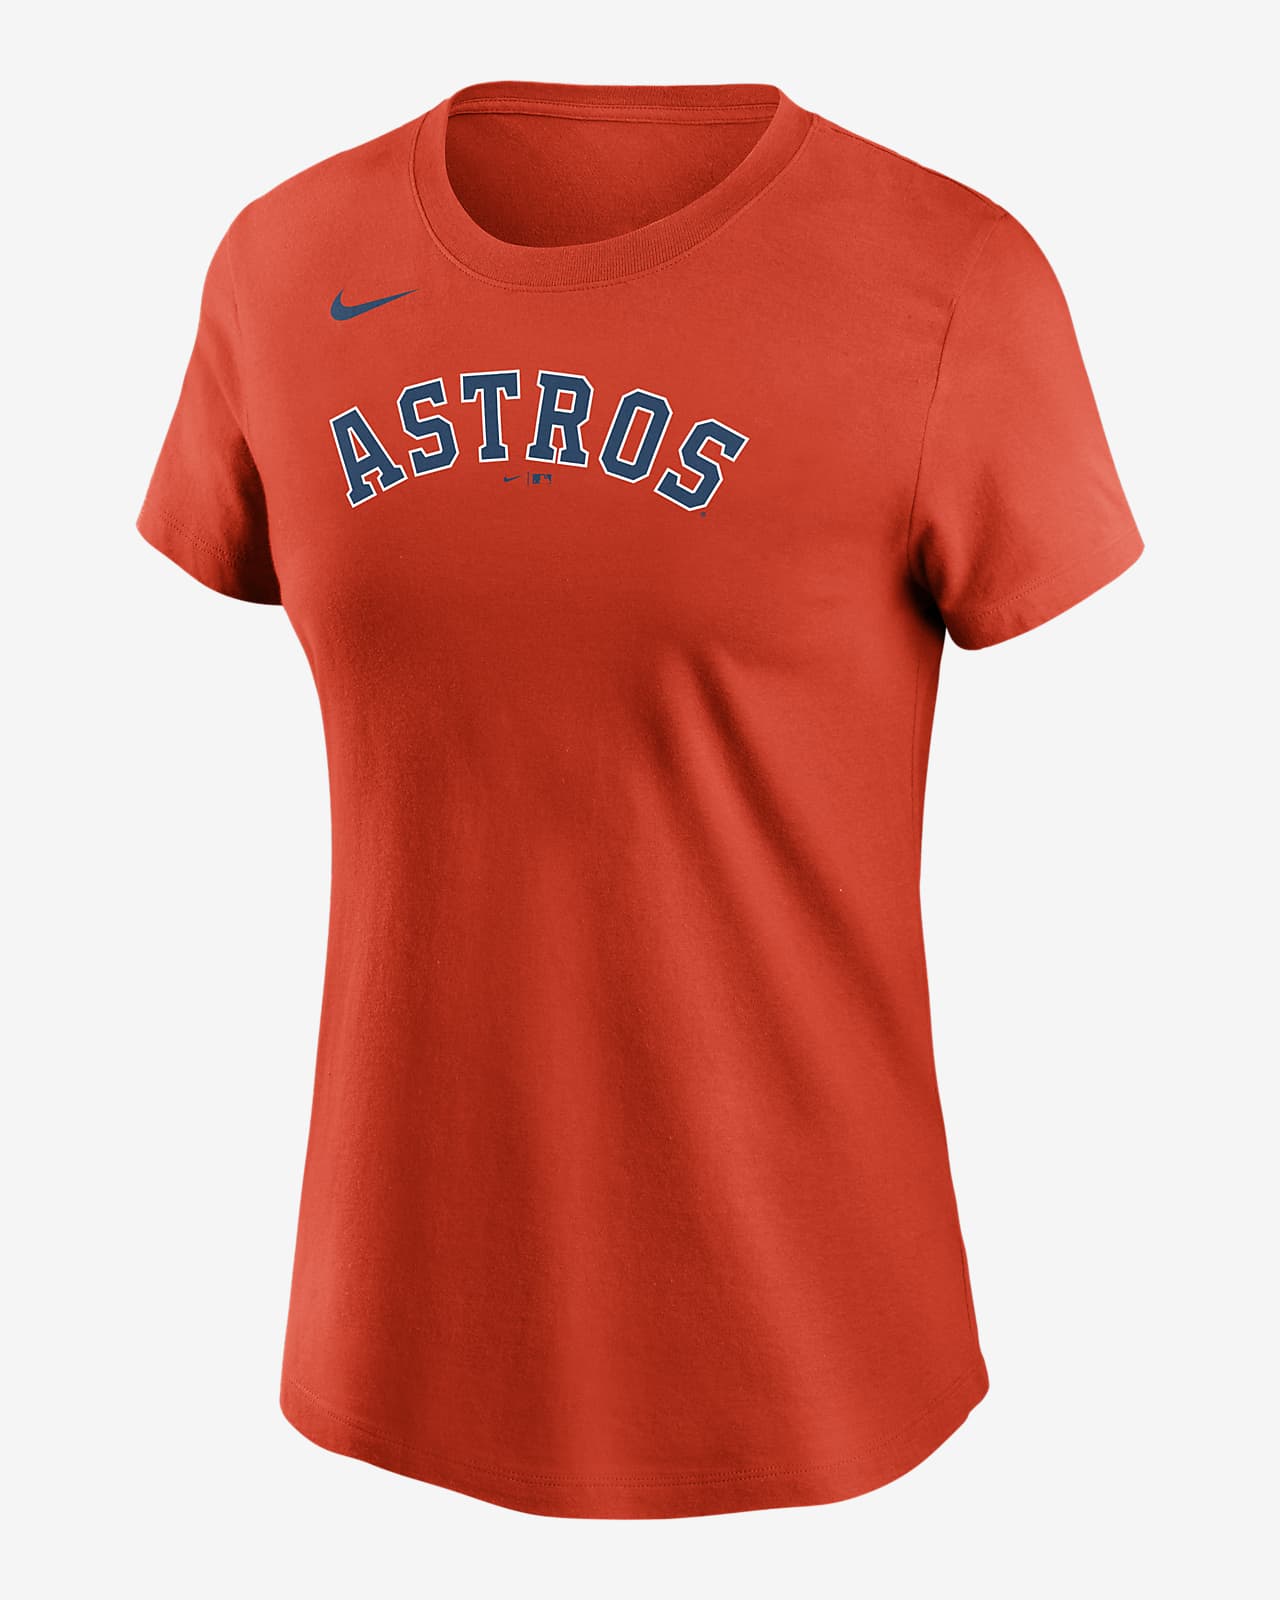 astros women's shirt